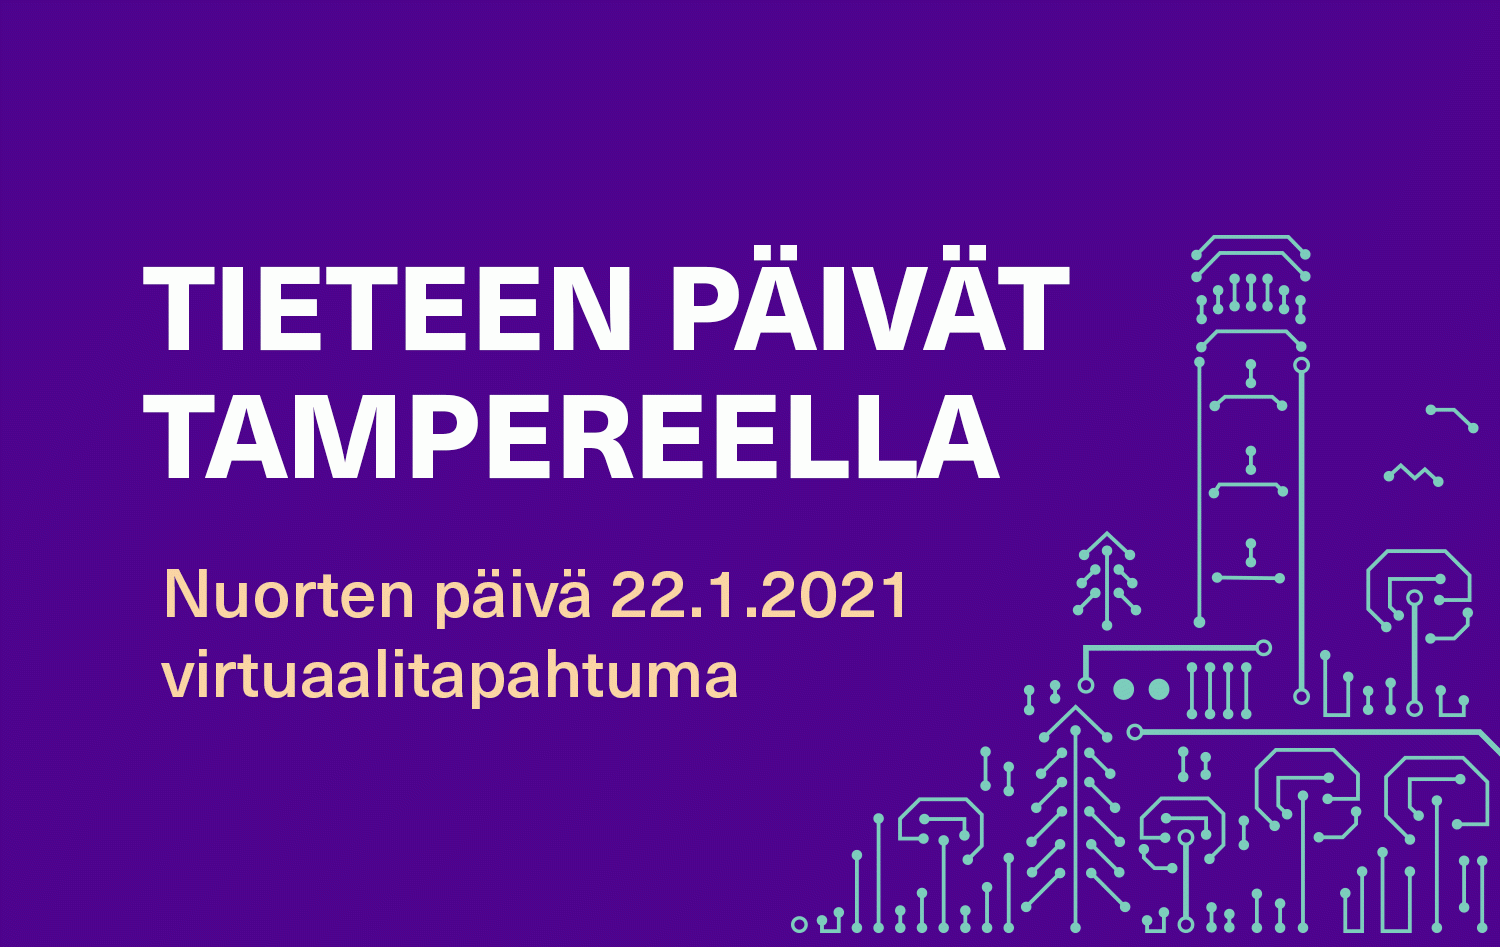 lift home delivery Initially Tieteen päivät Tampereella, Nuorten päivä | Tampereen korkeakouluyhteisö